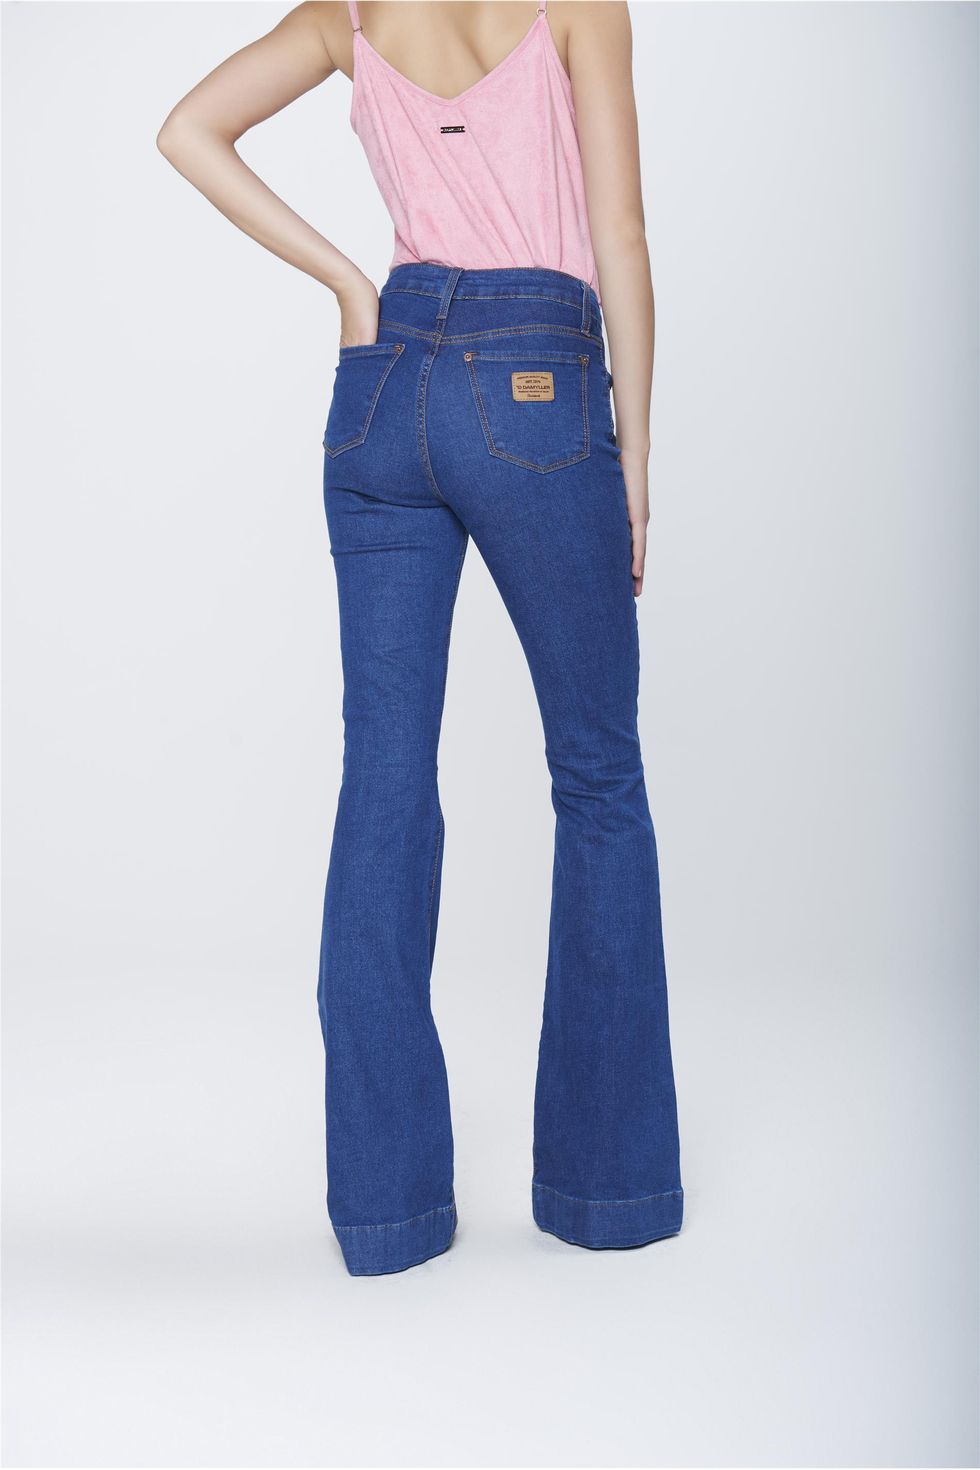 fotos de calça jeans cintura alta flare